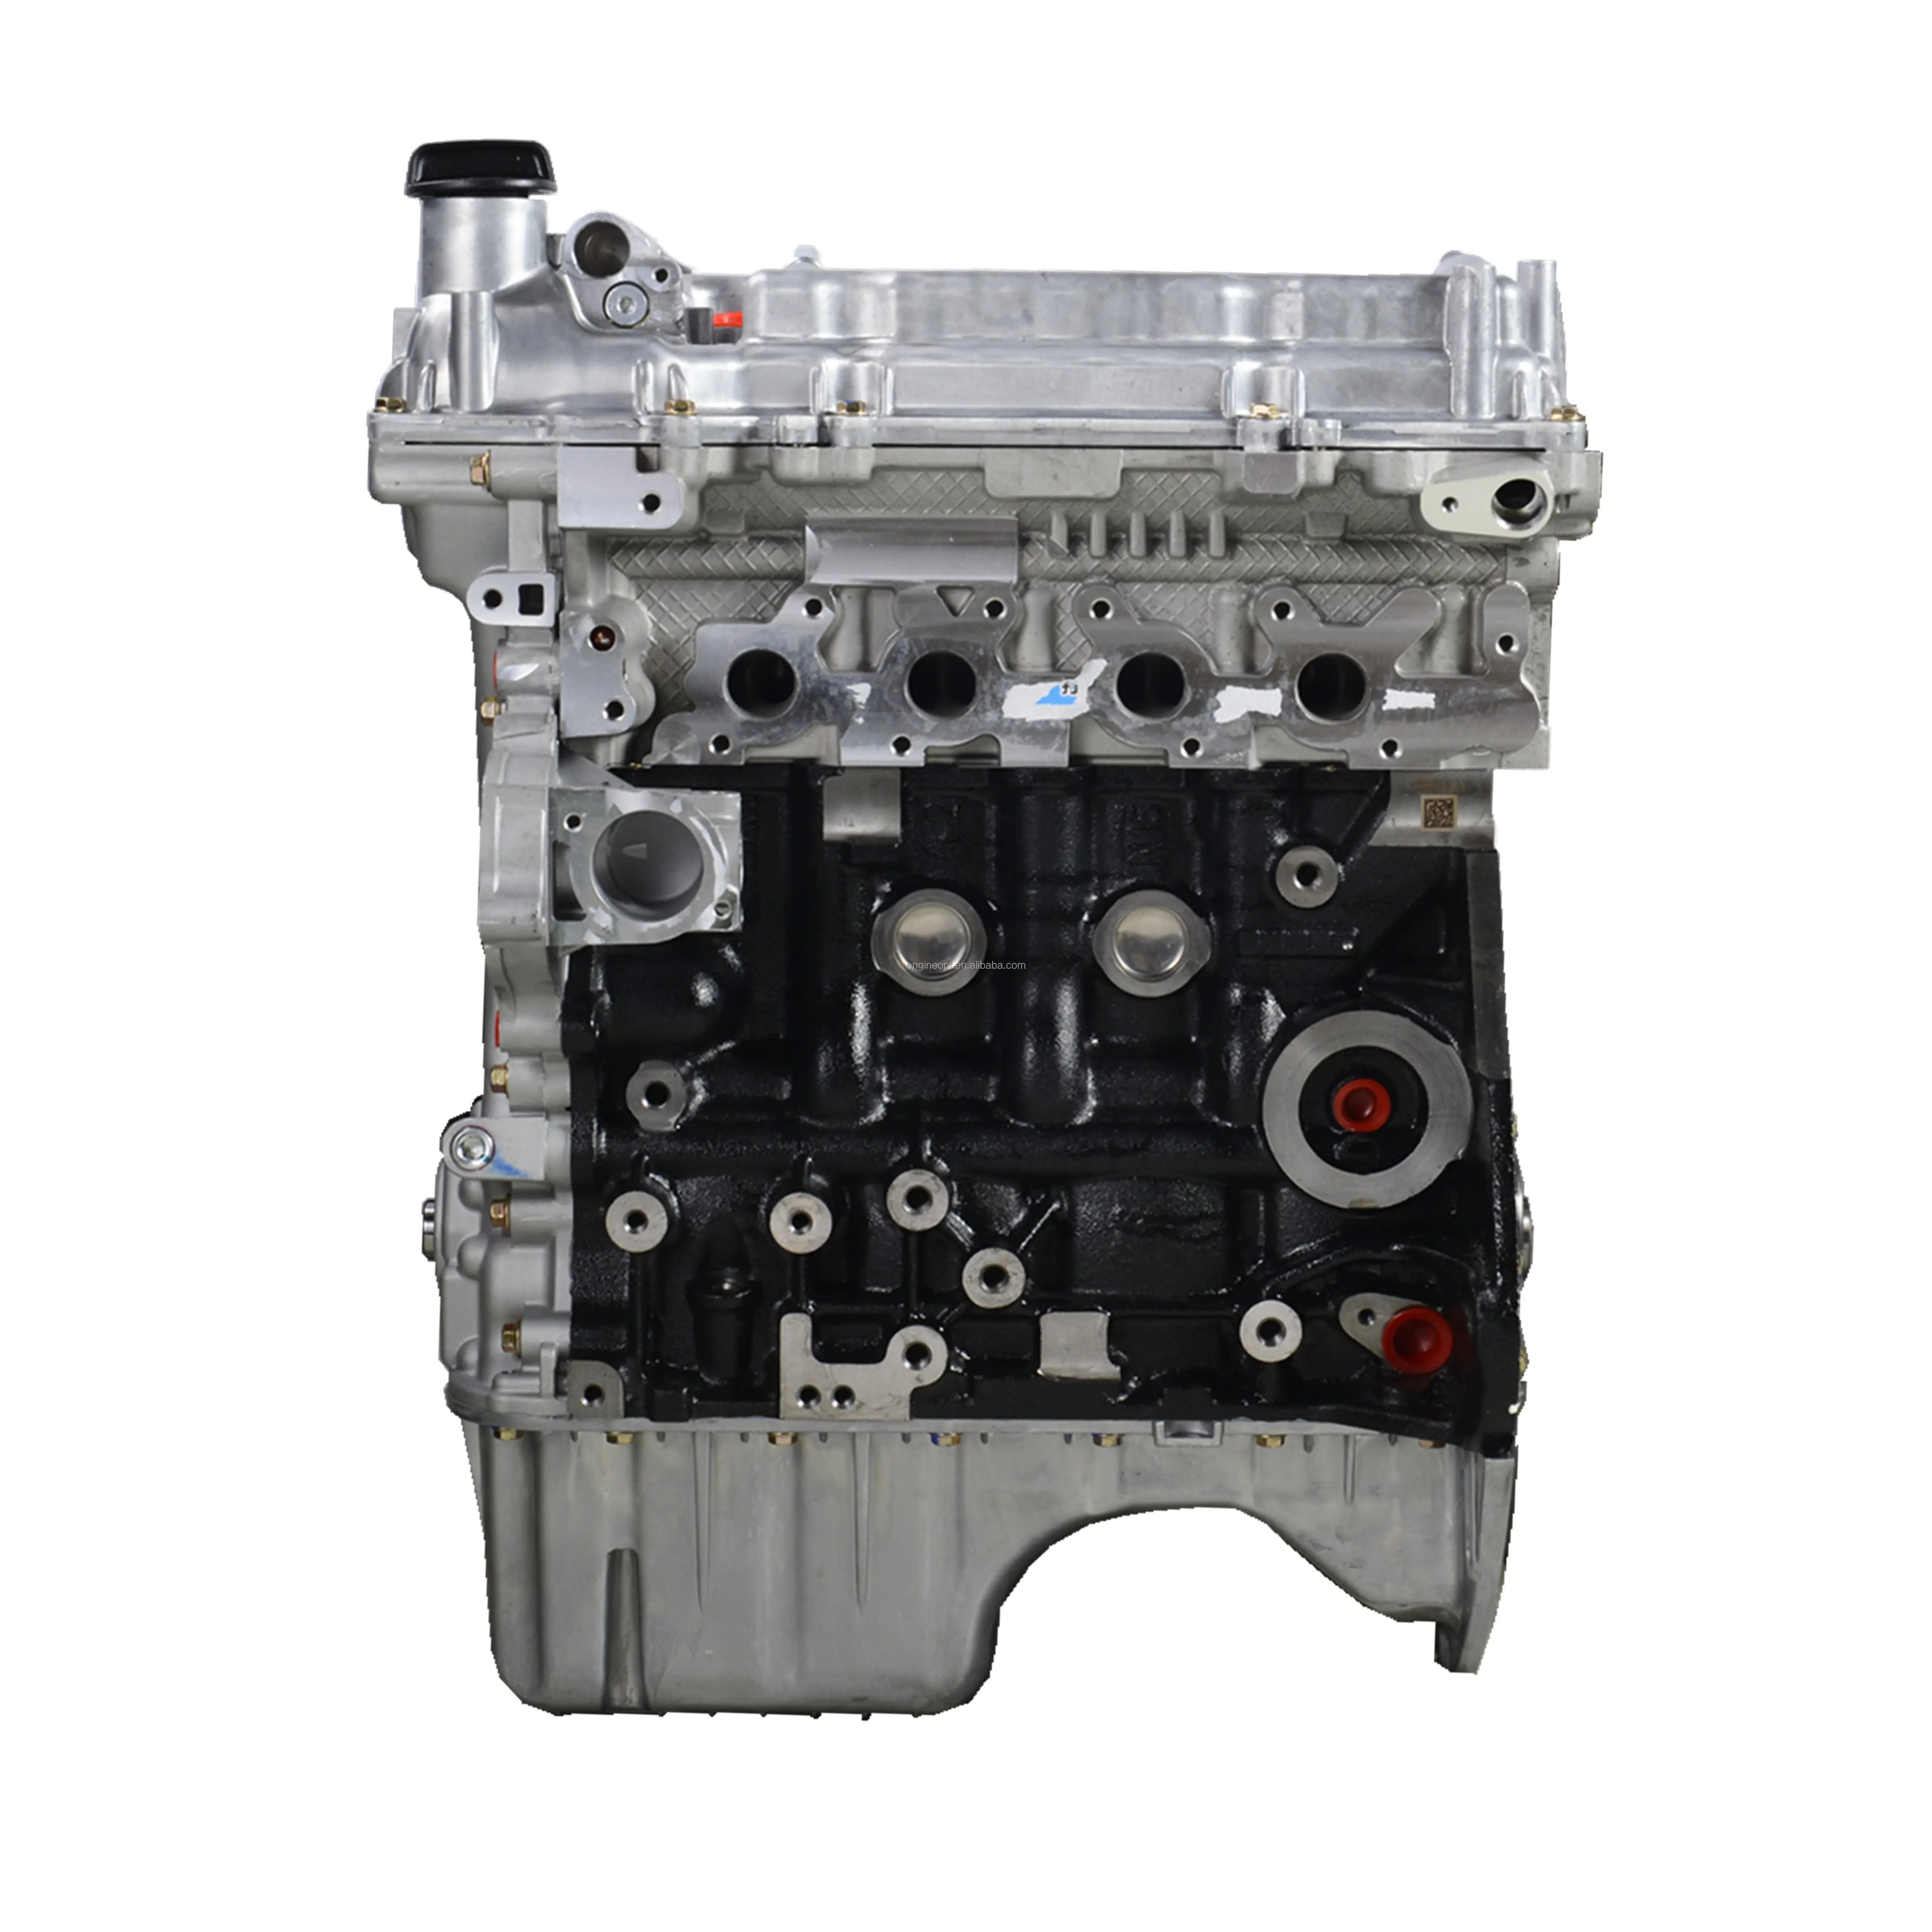 التقيد الأسهم جديد B15 عارية المحرك 1.5L لشفروليه N300 العمل الميني محرك السيارة